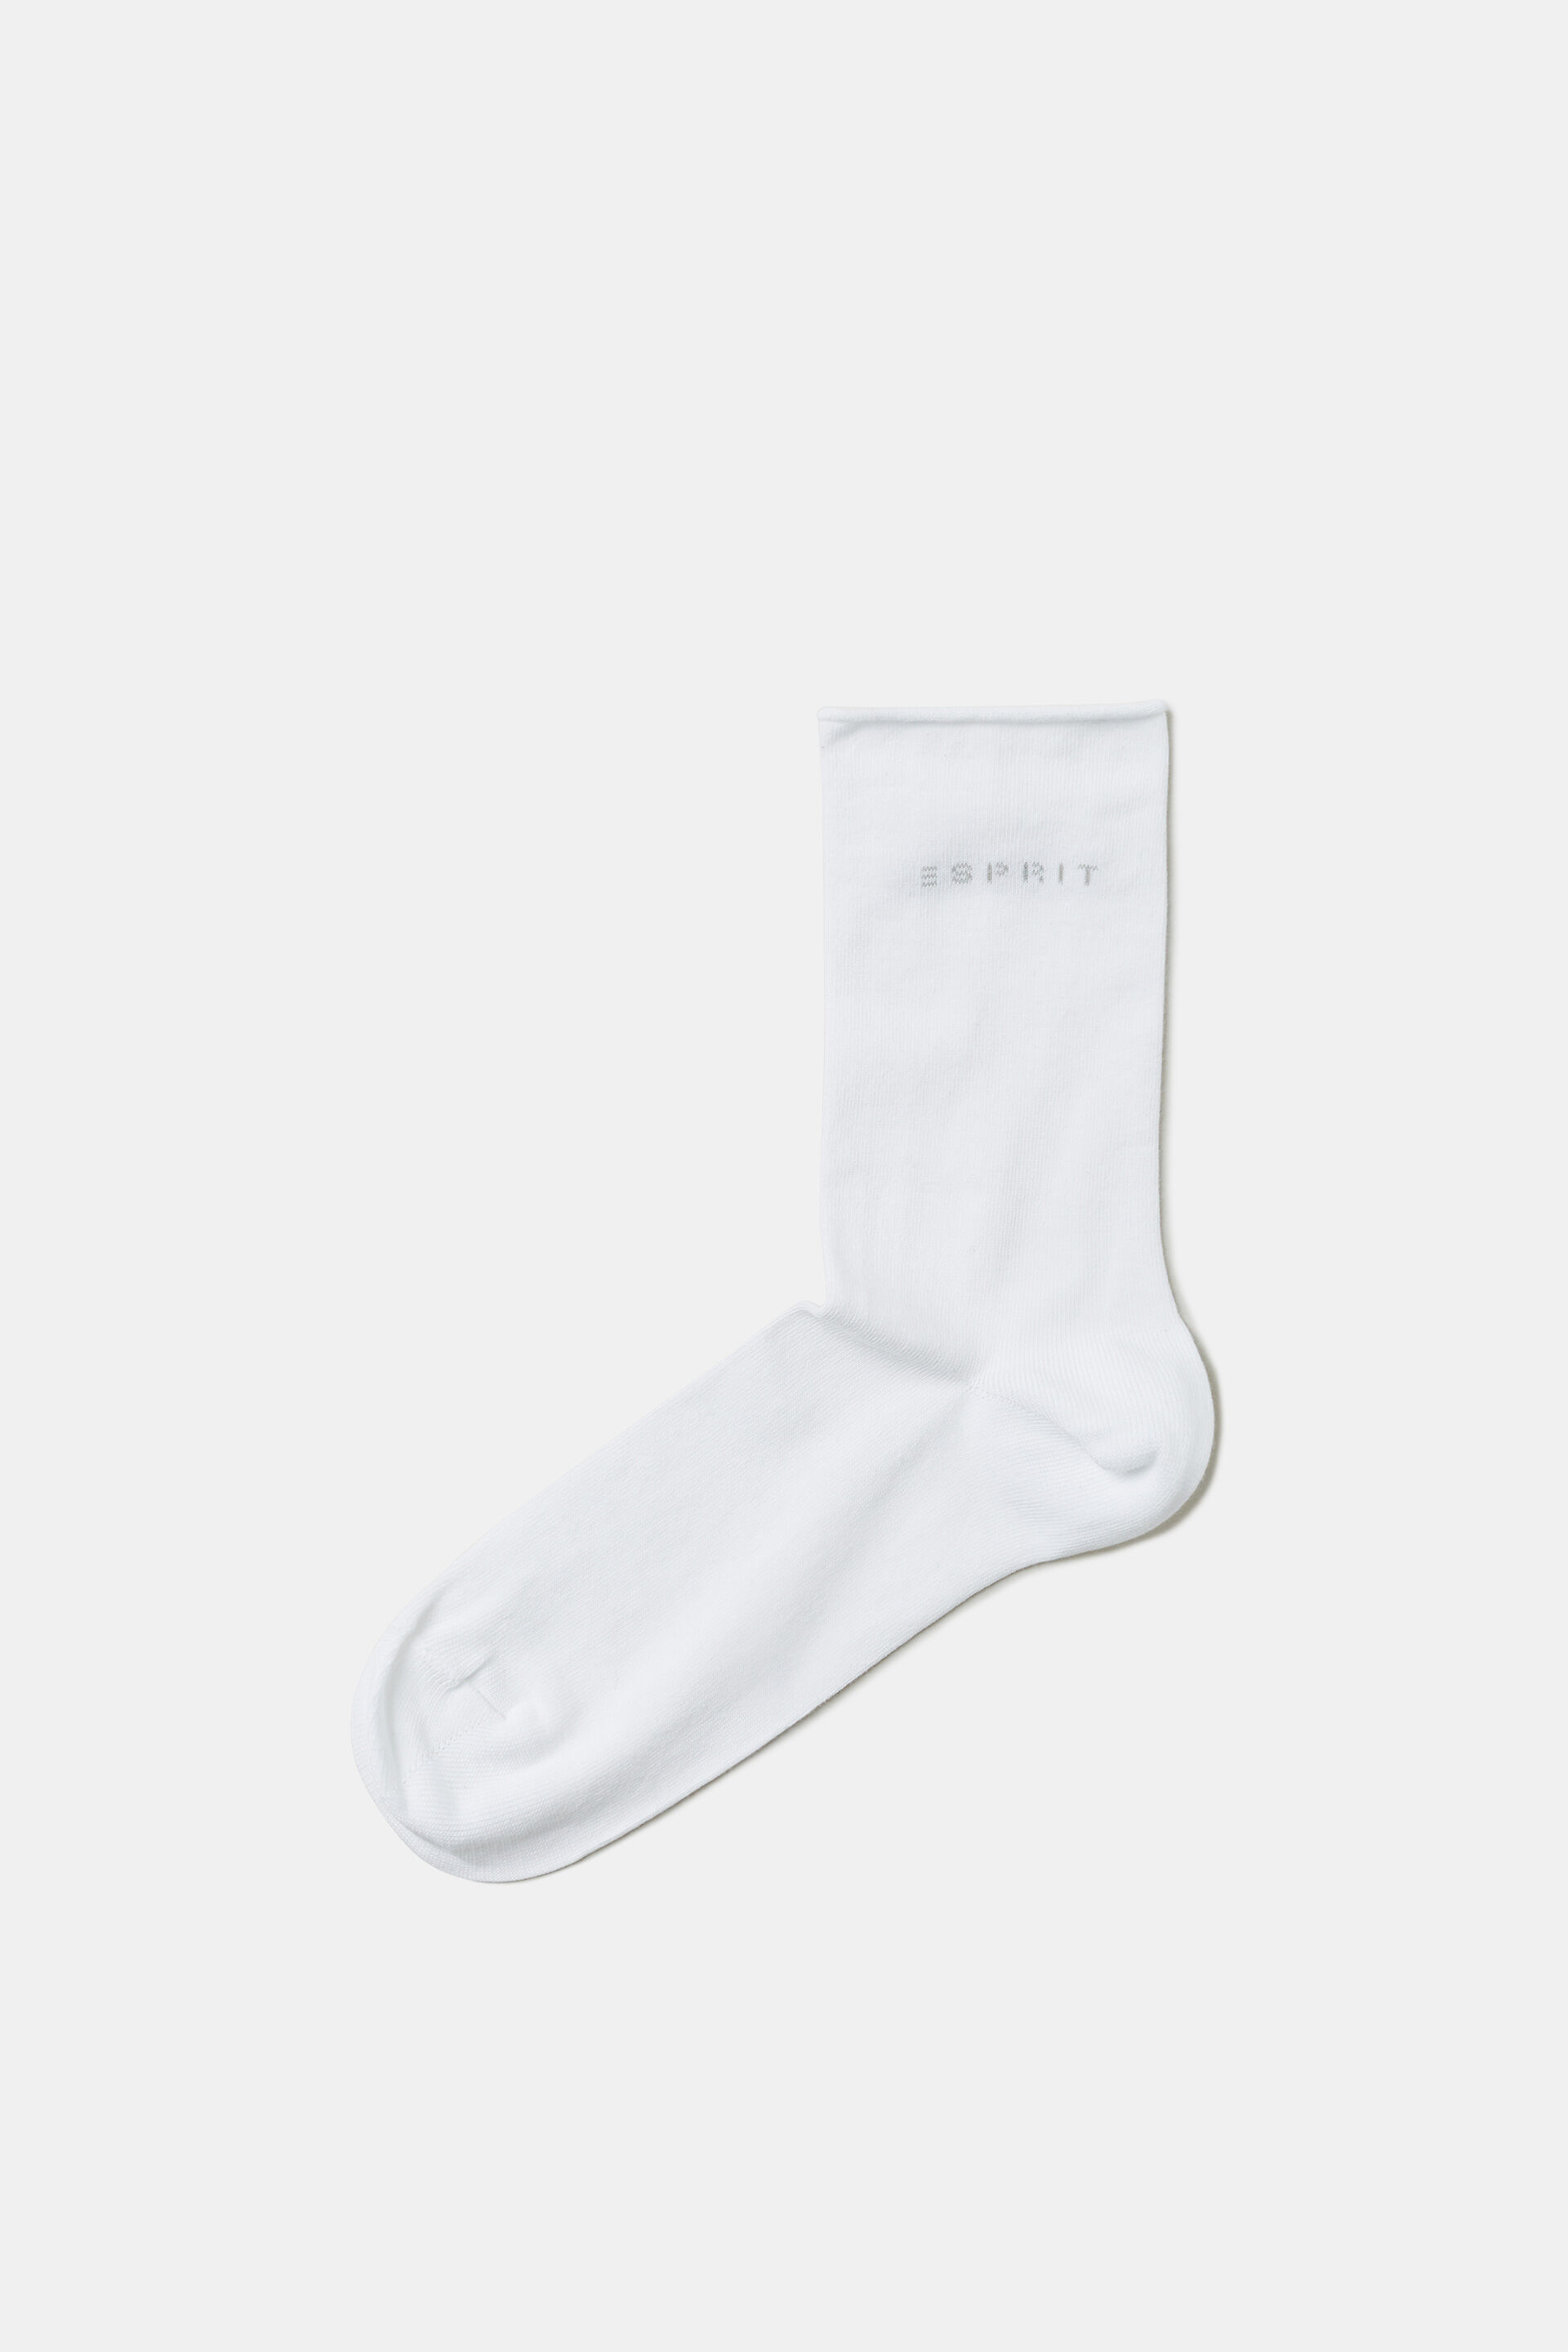 Esprit 2er-Pack Rollkanten, mit Bio-Baumwolle Socken